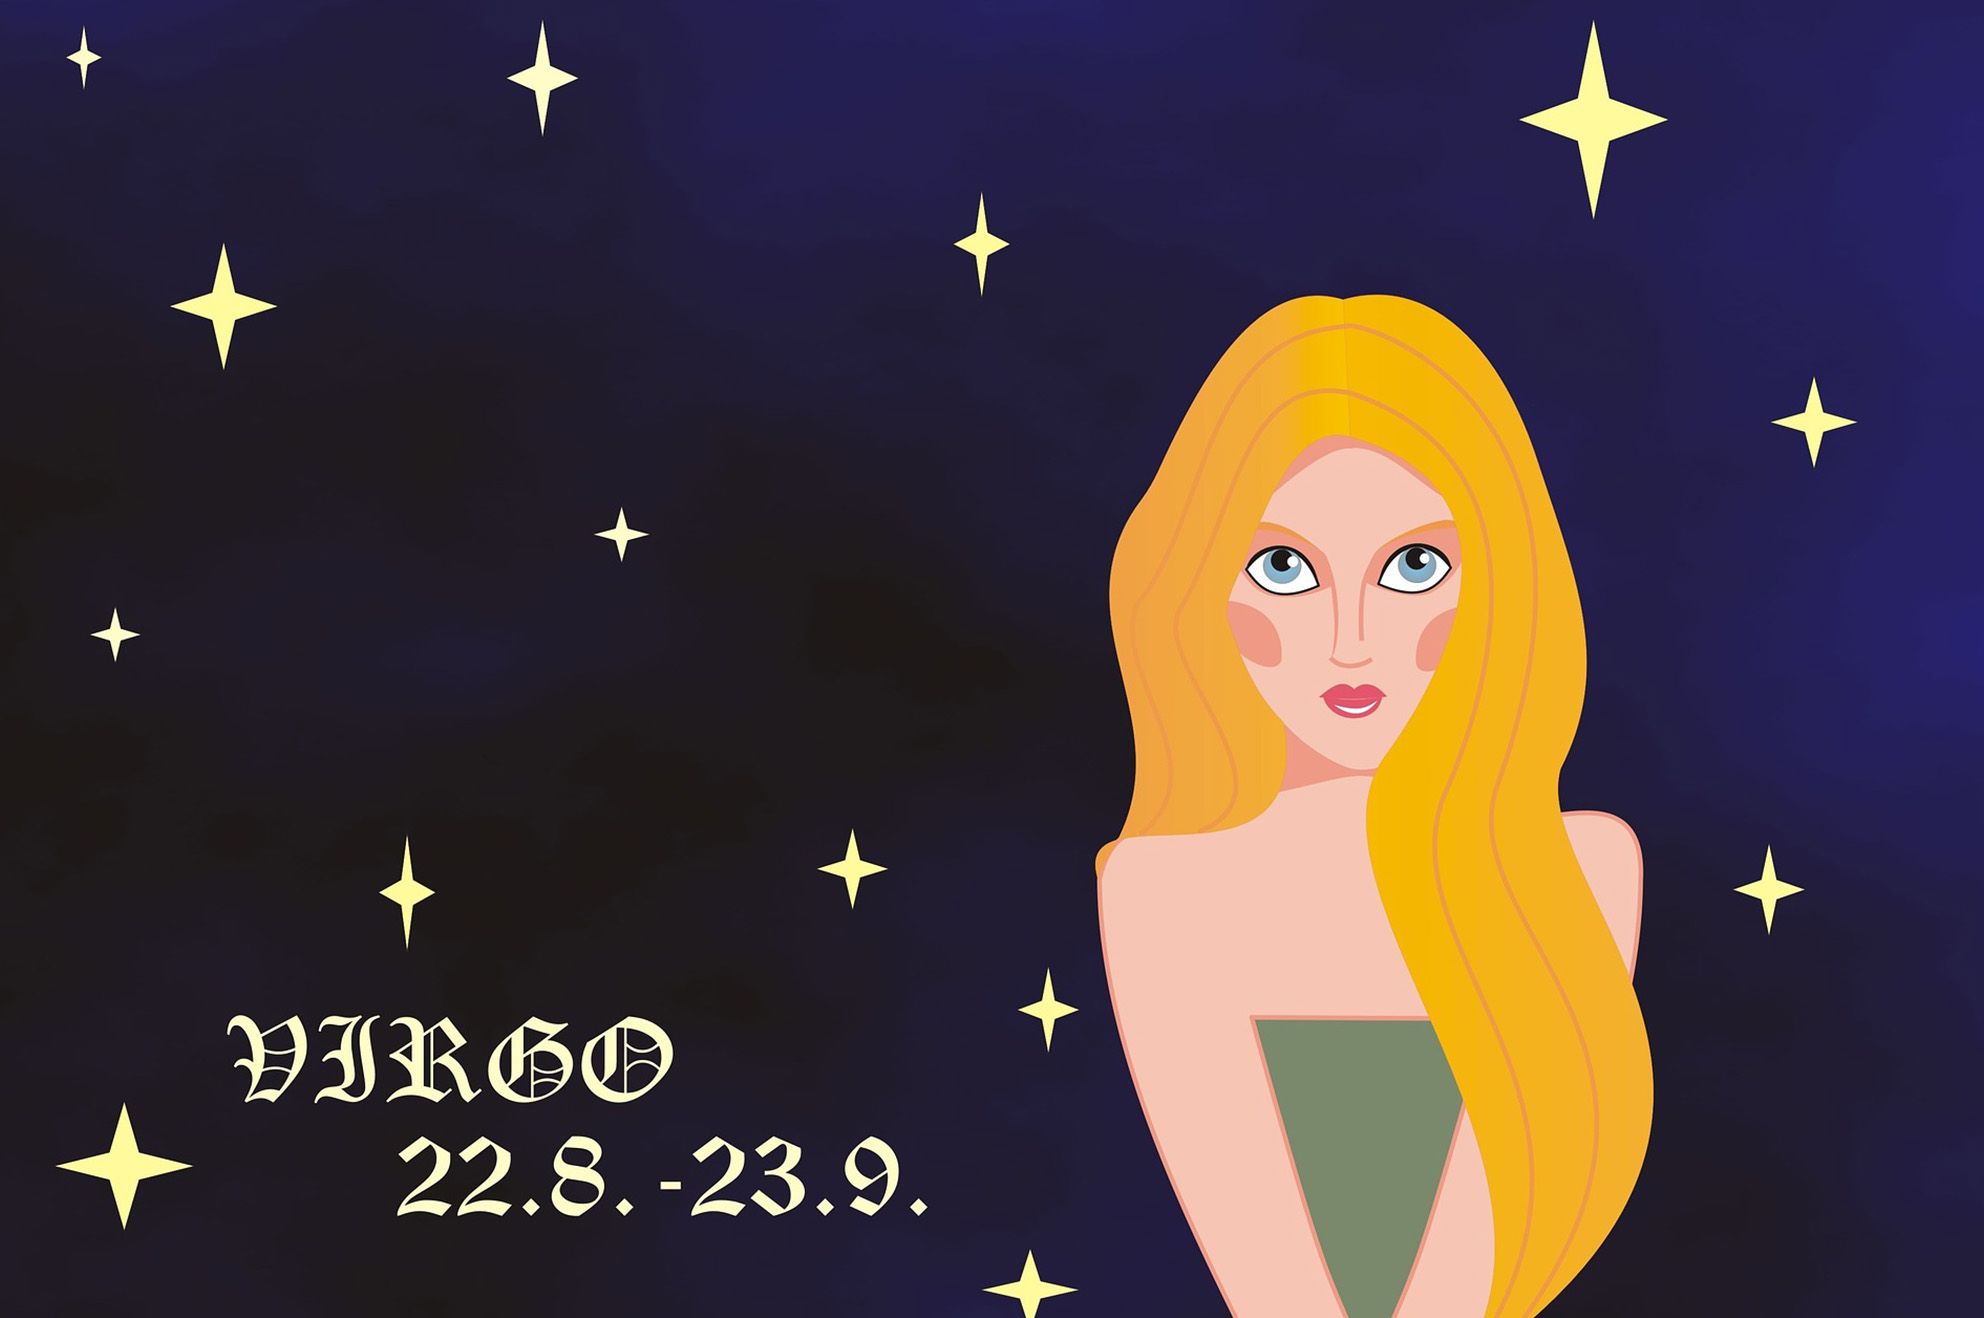 Ramalan zodiak Virgo besok 11 Mei 2021.